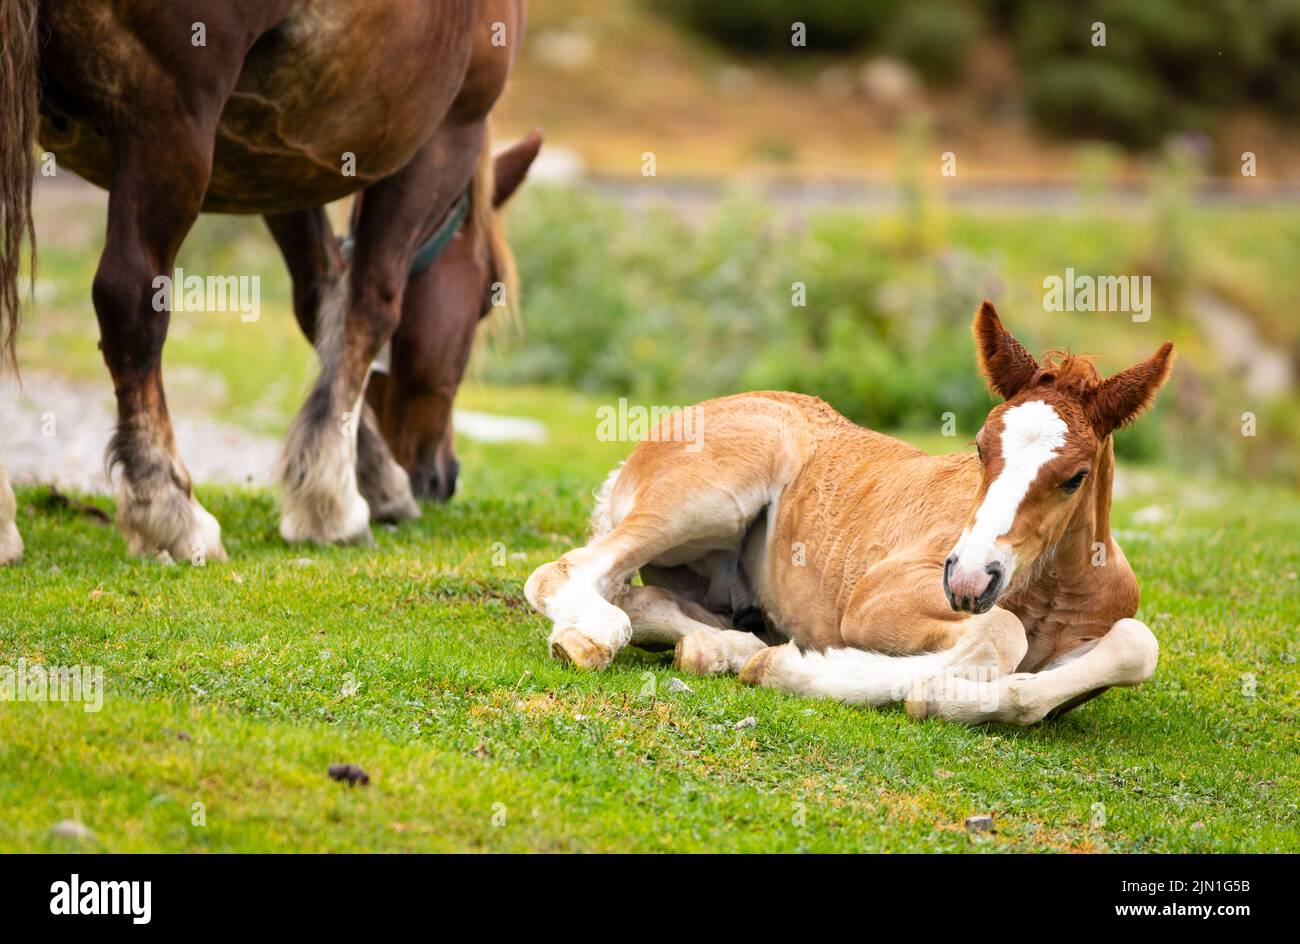 Homme foal reposant dans l'herbe avec sa mère à côté (equus ferus cabalus) Cavall Pirinenc Català (Cheval pyrénéen catalan) Banque D'Images